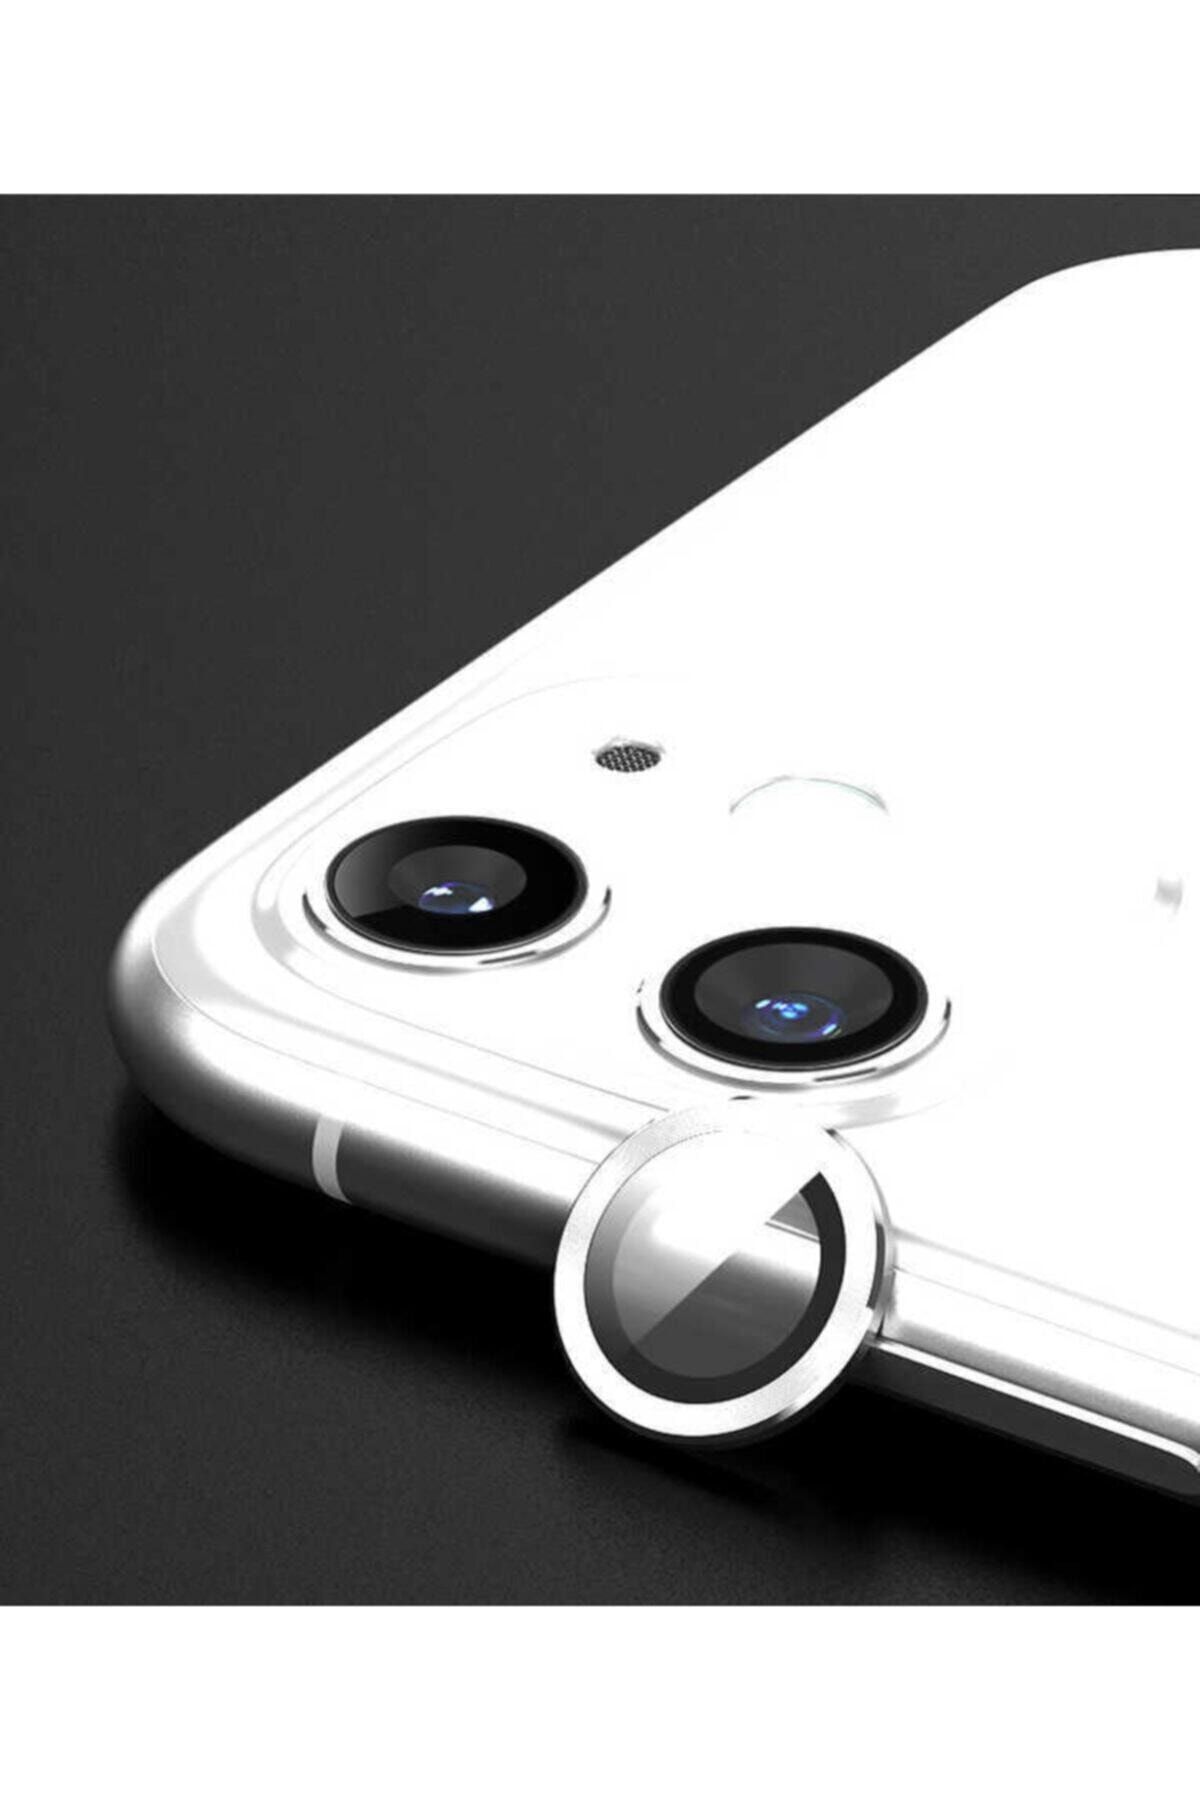 mooncase Iphone 11 / 12 Mini/ 12 (6.1) Uyumlu Mercek-lens Kamera Koruması Gri Renk